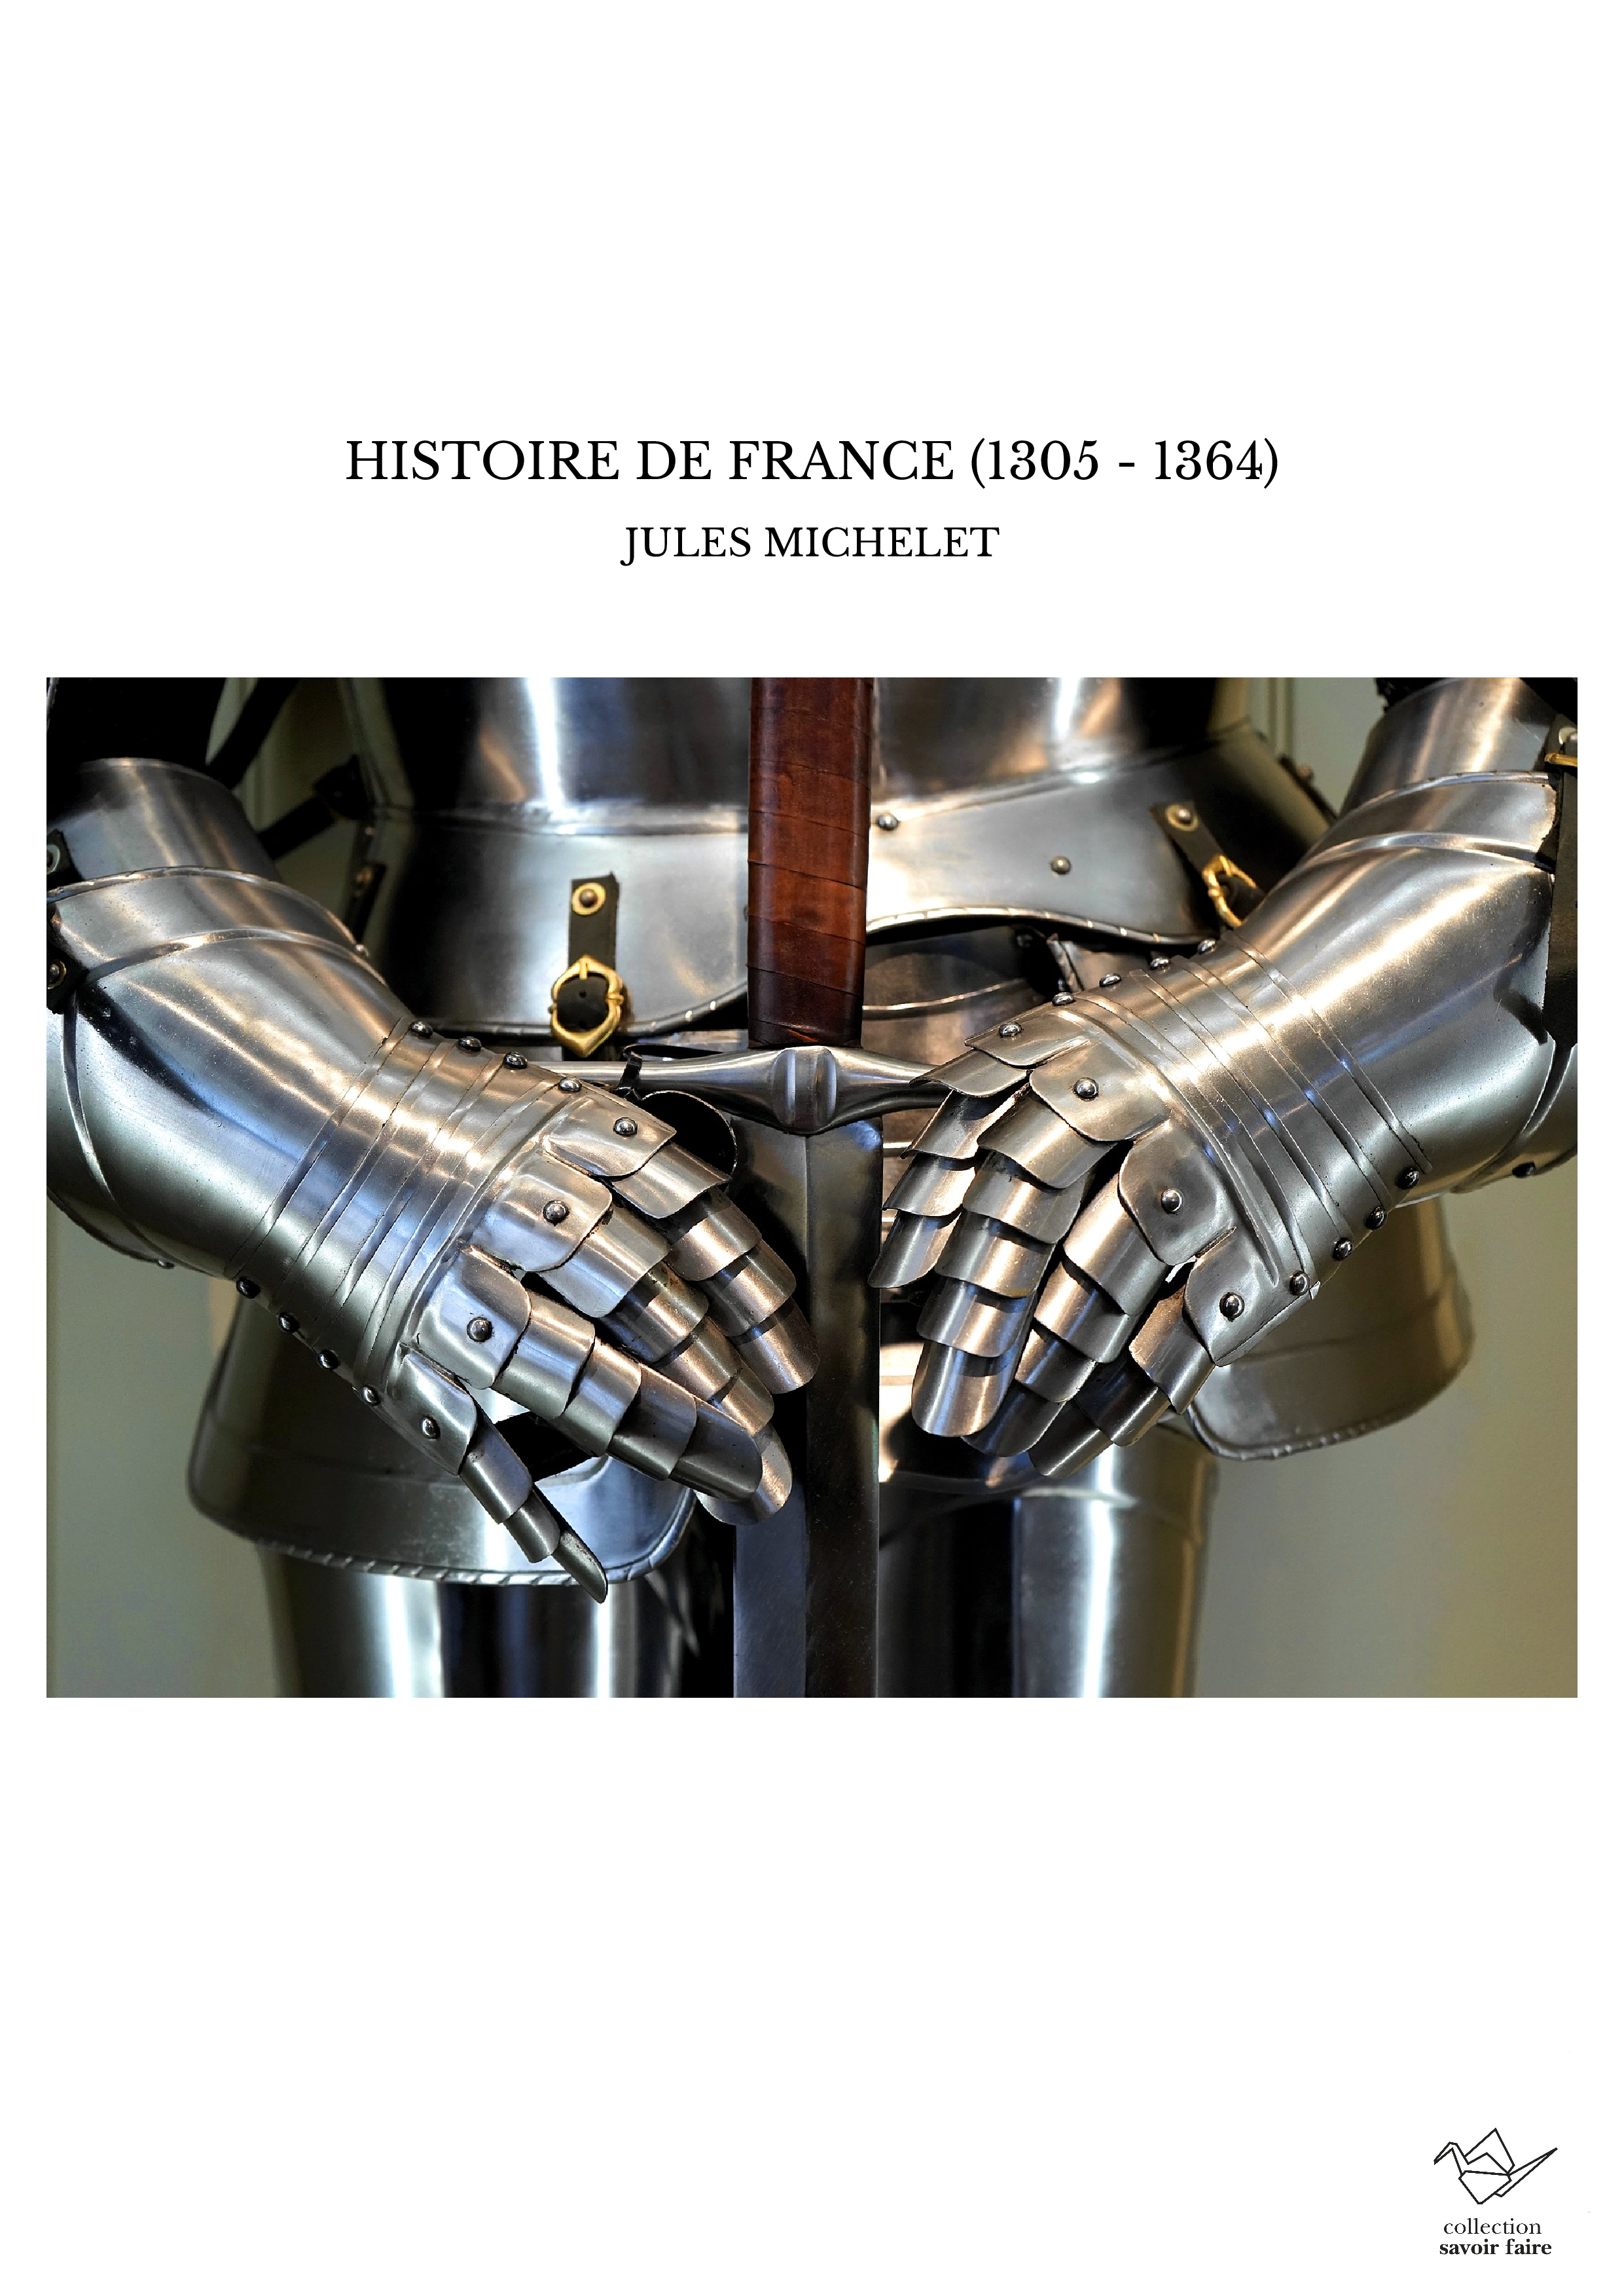 HISTOIRE DE FRANCE (1305 - 1364)